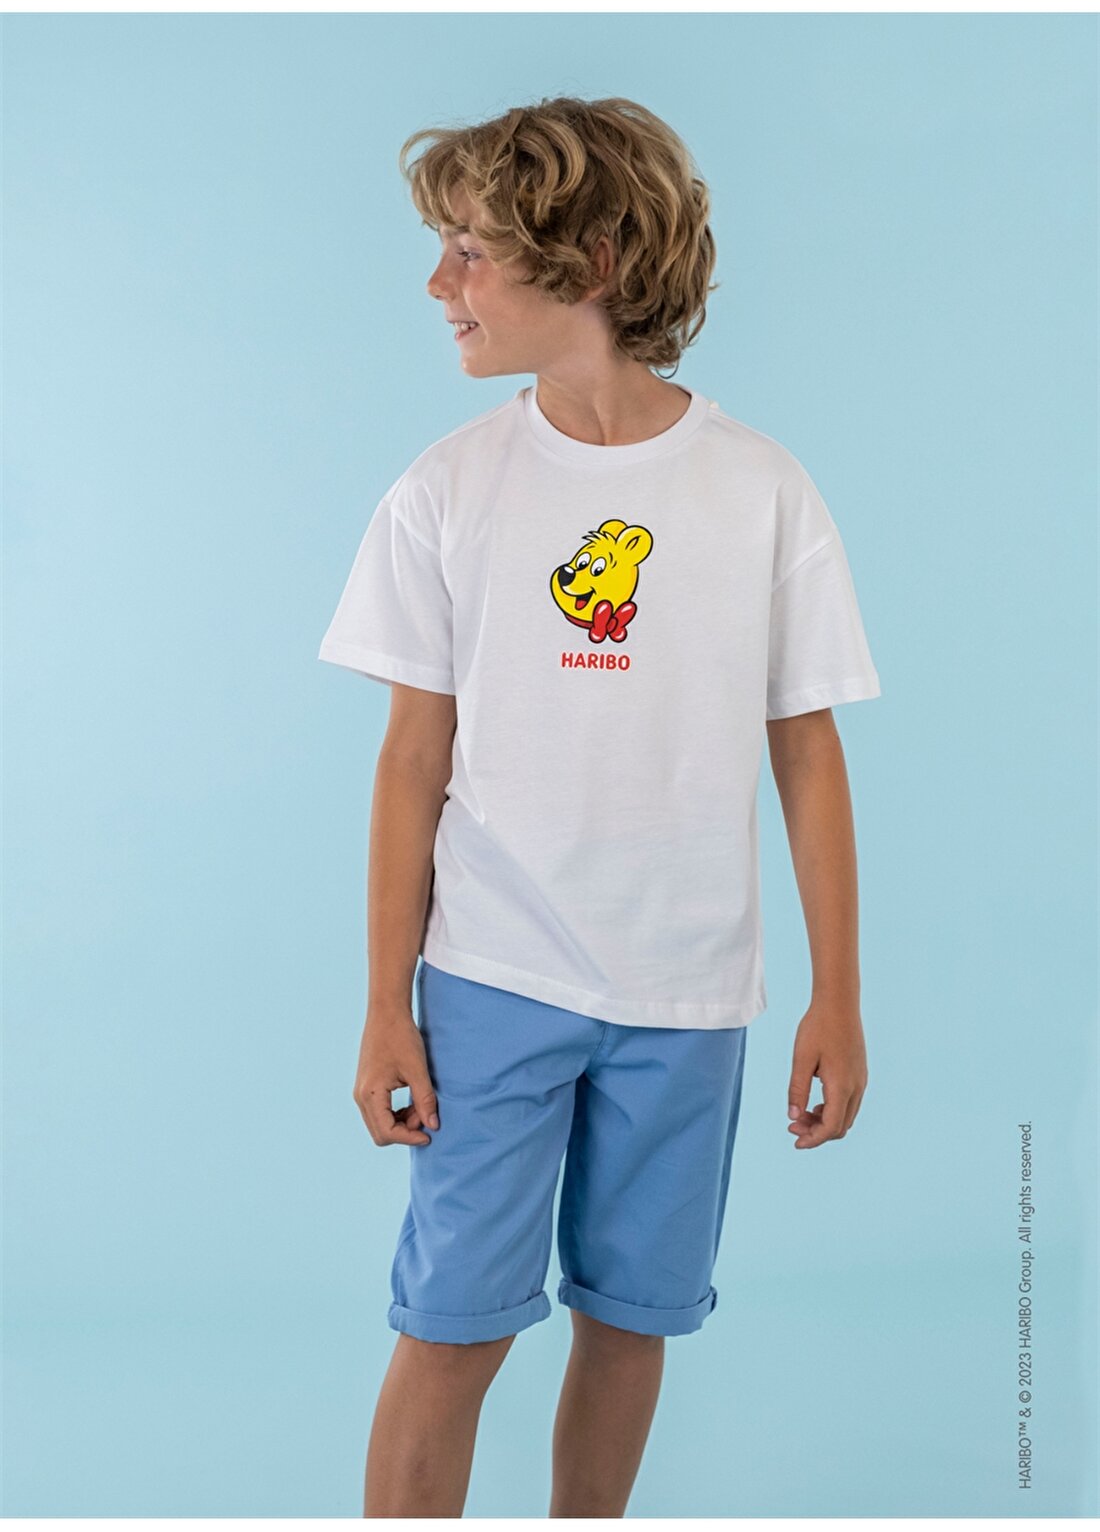 Haribo Baskılı Beyaz Erkek Çocuk T-Shirt HRBTXT109